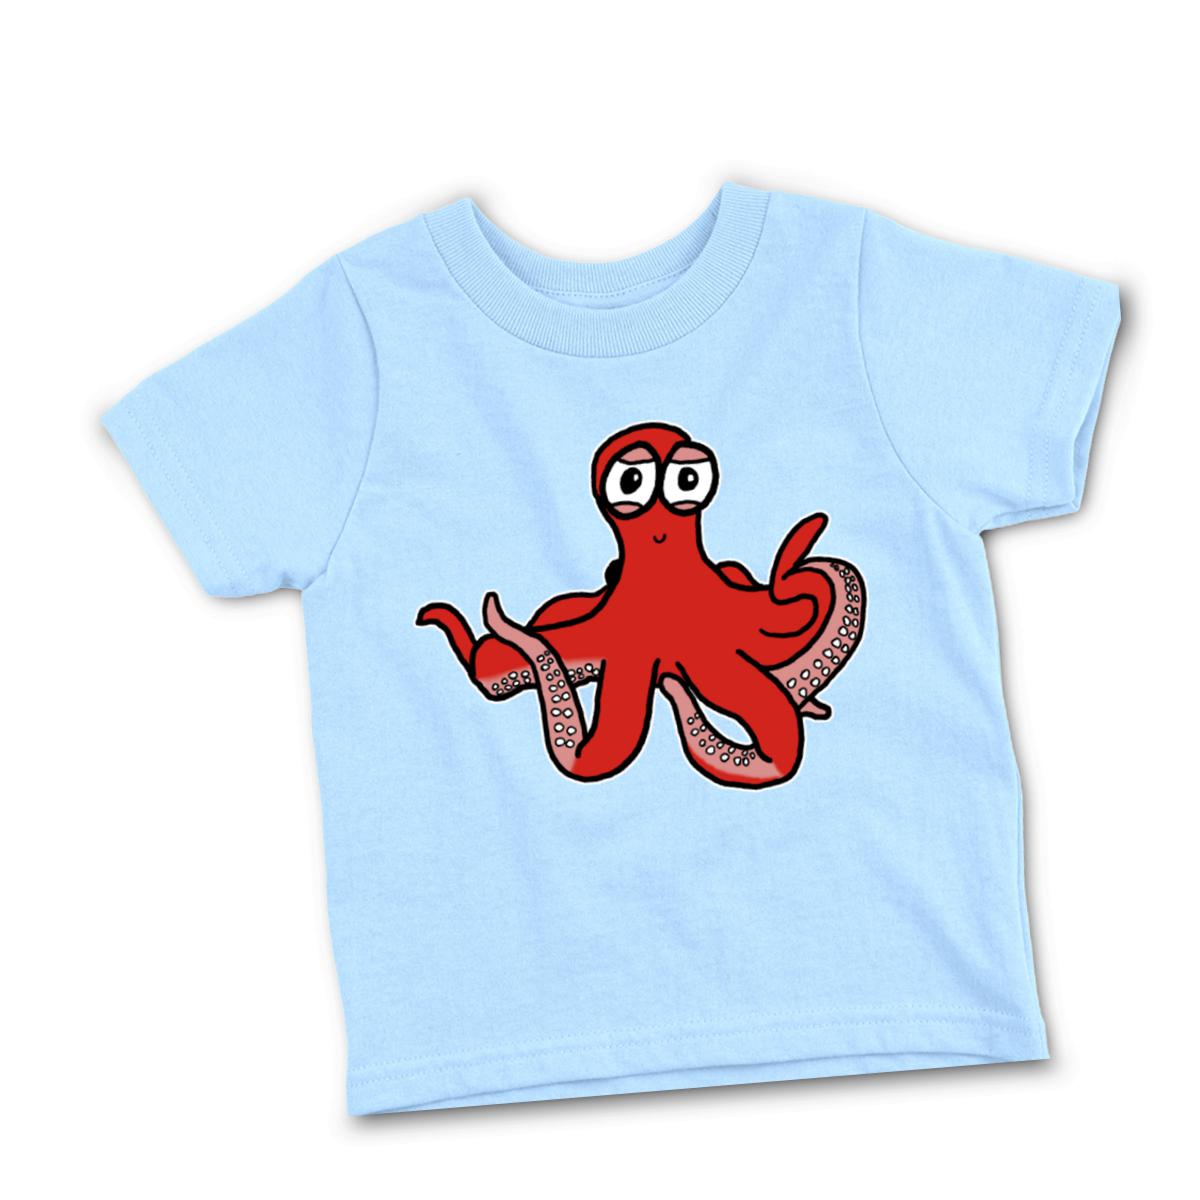 Octopus Toddler Tee 4T light-blue